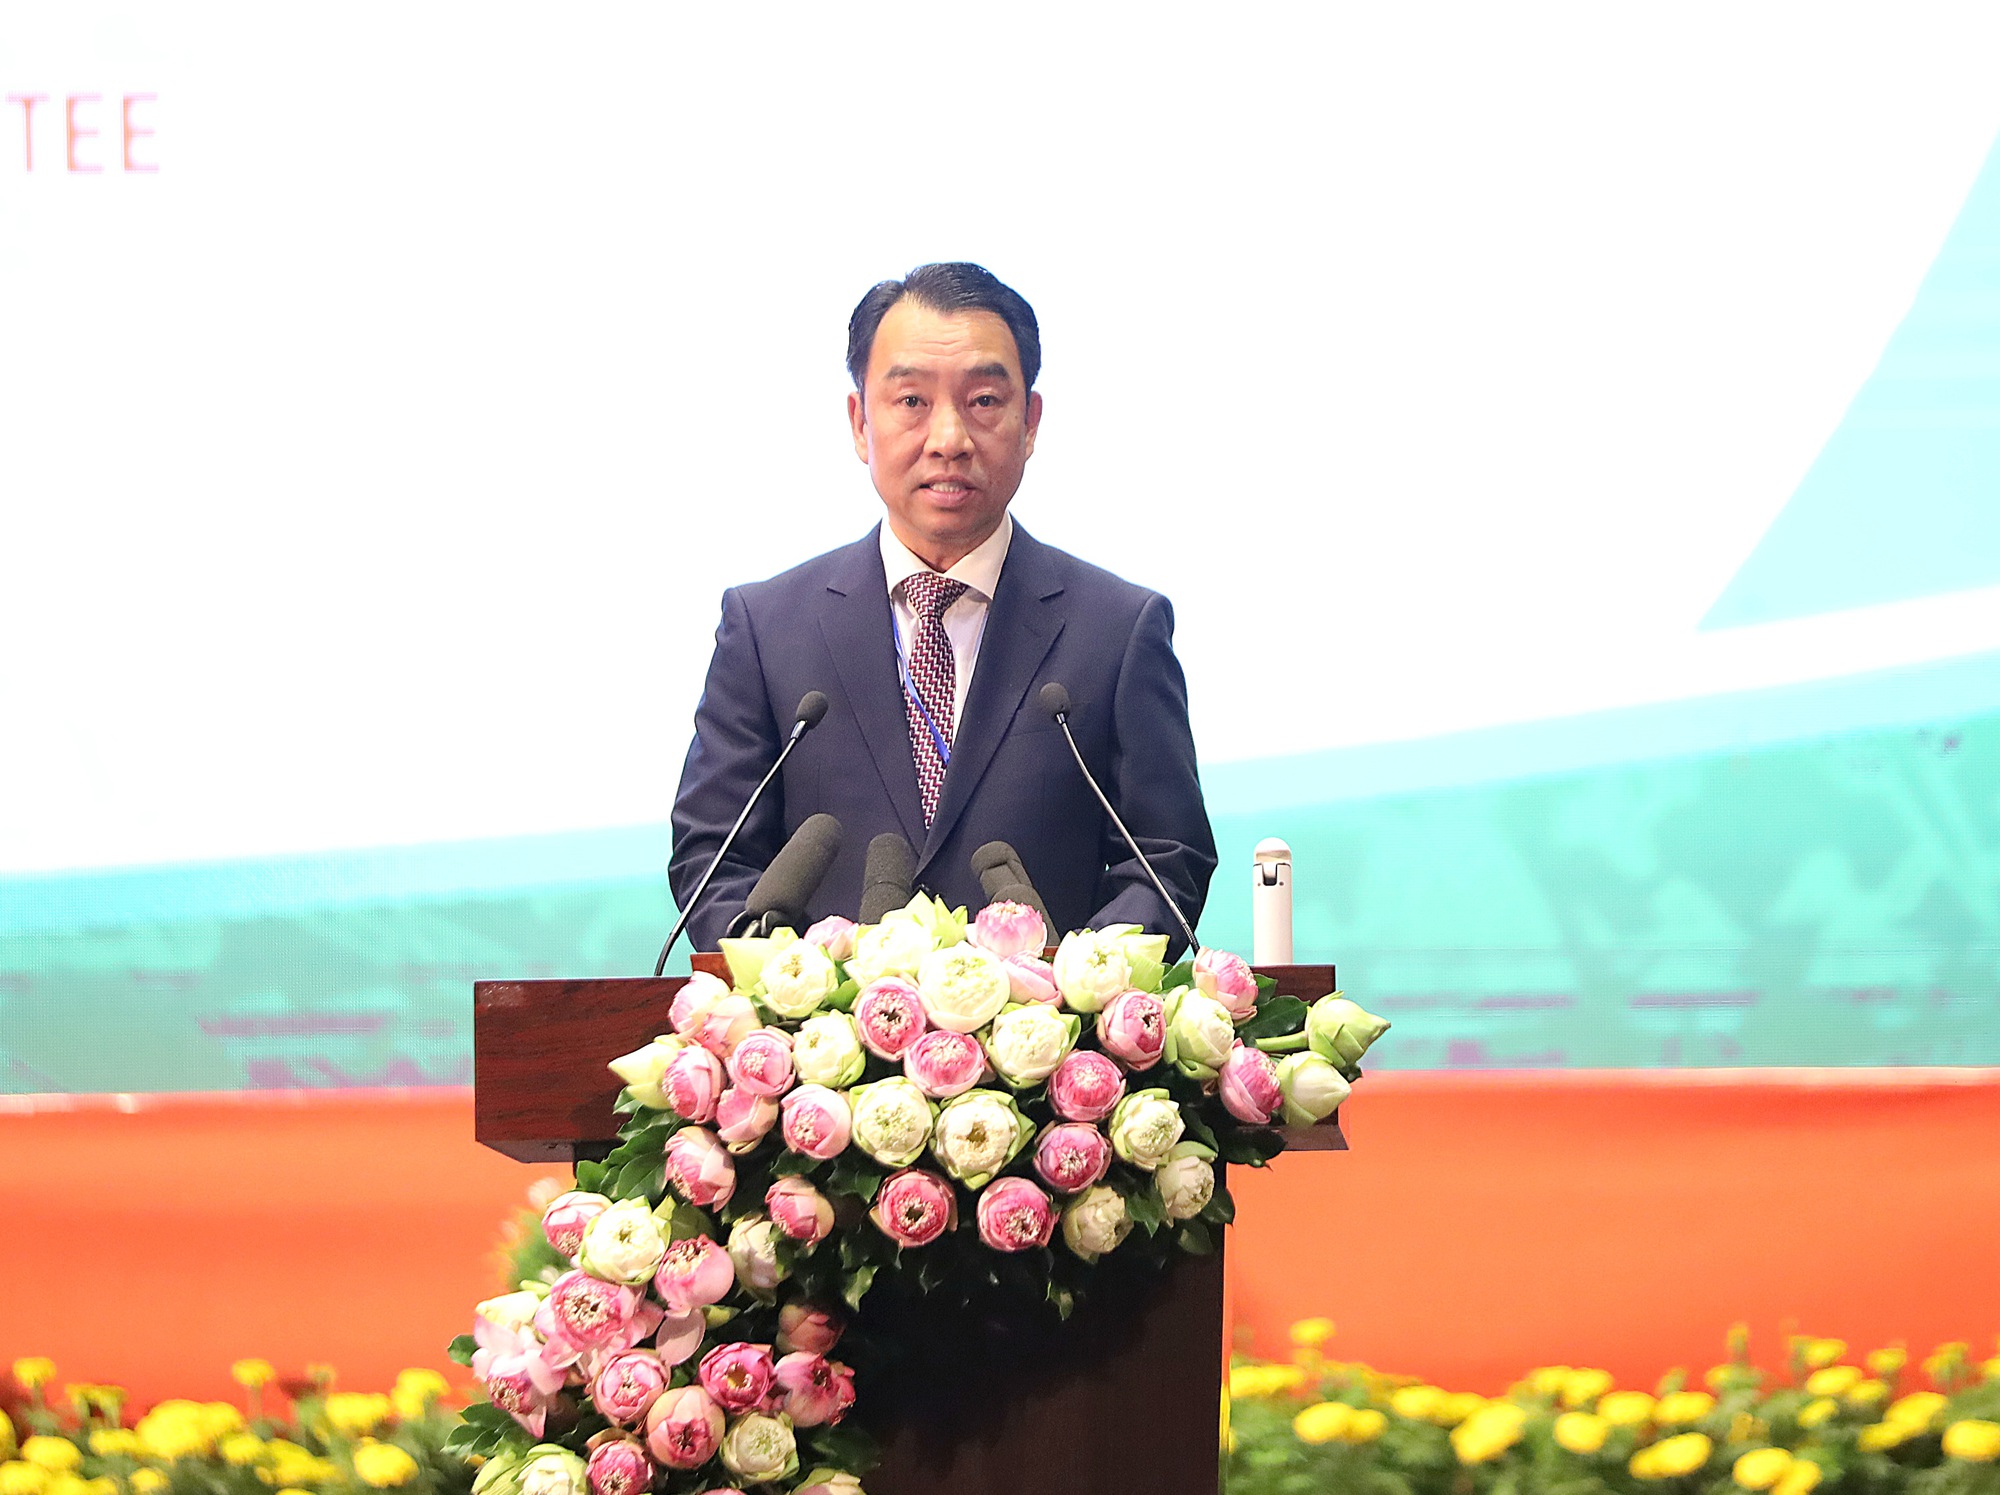 Ông Lữ Quang Ngời, Chủ tịch UBND tỉnh Vĩnh Long nhấn mạnh, Quy hoạch tỉnh thời kỳ 2021 - 2030, tầm nhìn đến năm 2050 là cơ sở để Vĩnh Long thực hiện các mục tiêu, chỉ tiêu phát triển kinh tế - xã hội.